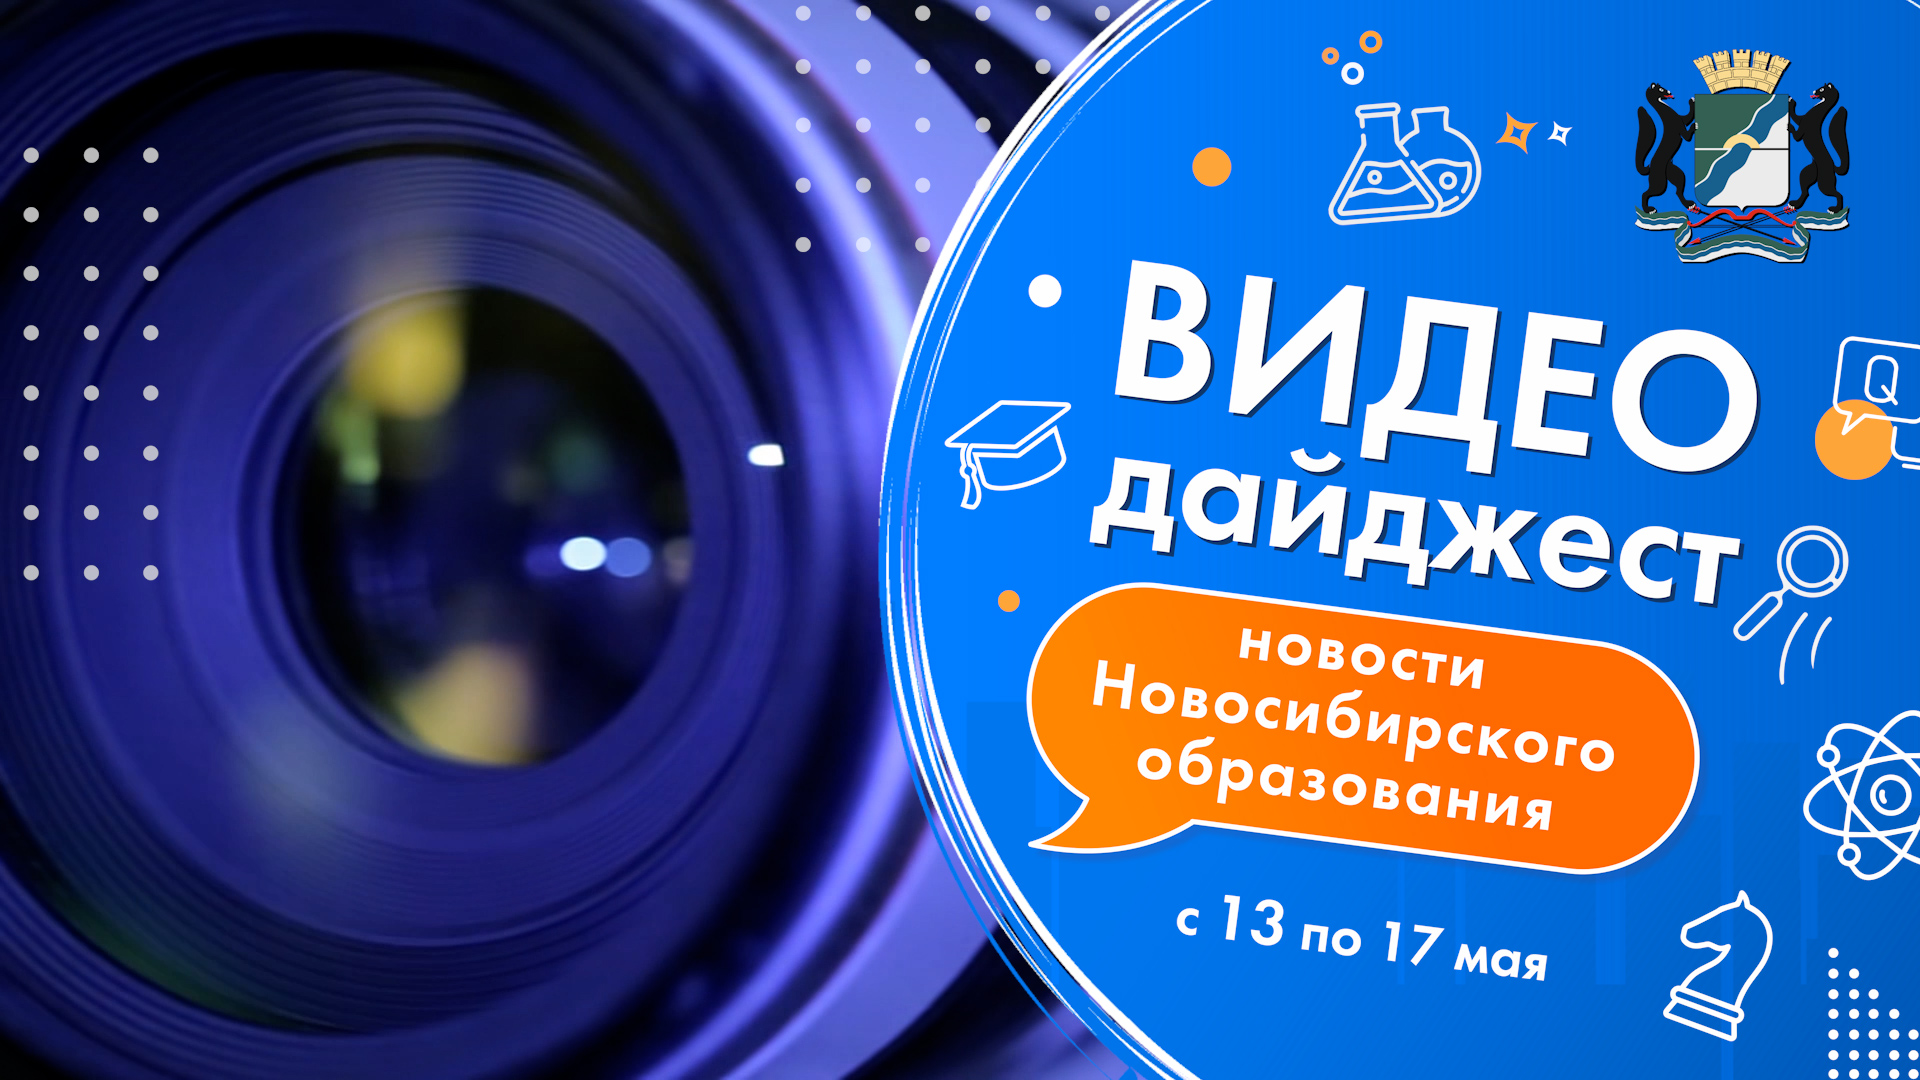 Видеодайджест новосибирского образования 13 - 17 мая